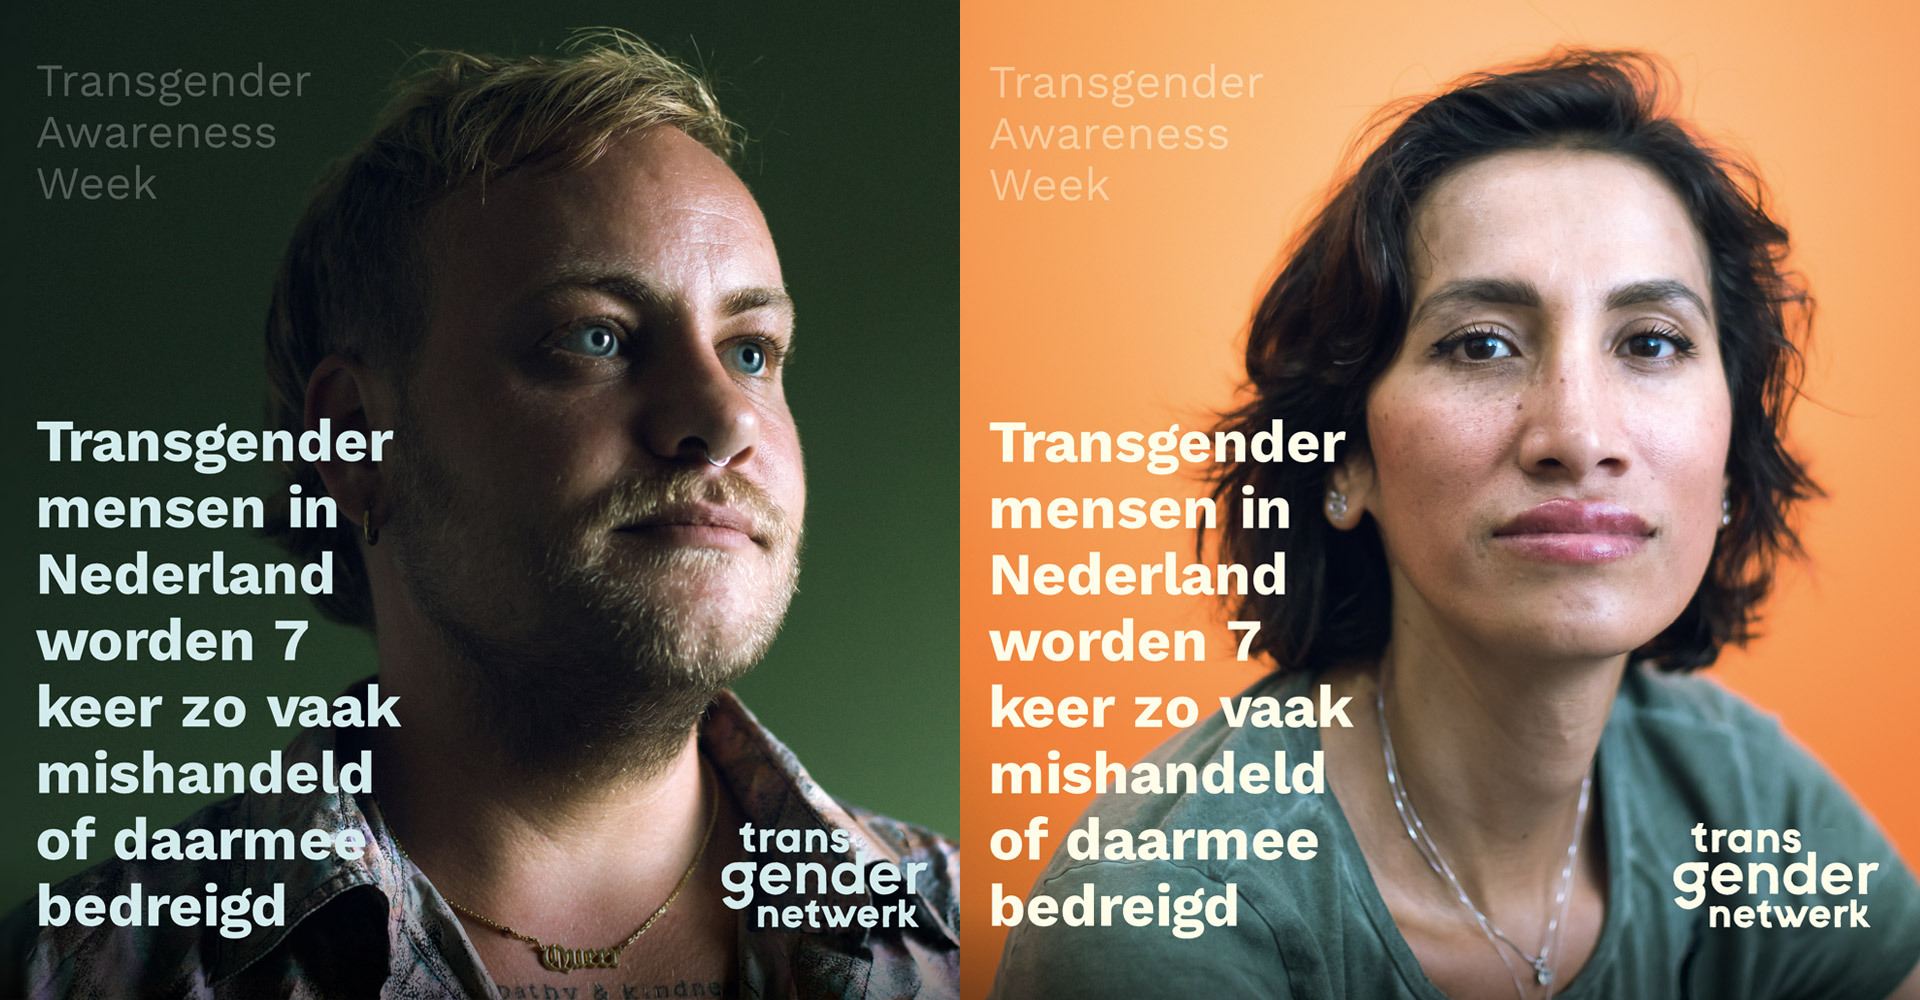 poster transgender awareness week van transgender netwerk. een afbeelding van een trans man en transvrouw met de tekst transgender mensen in nederland worden 7 keer zo vaak mishandeld of daarmee bedreigd.